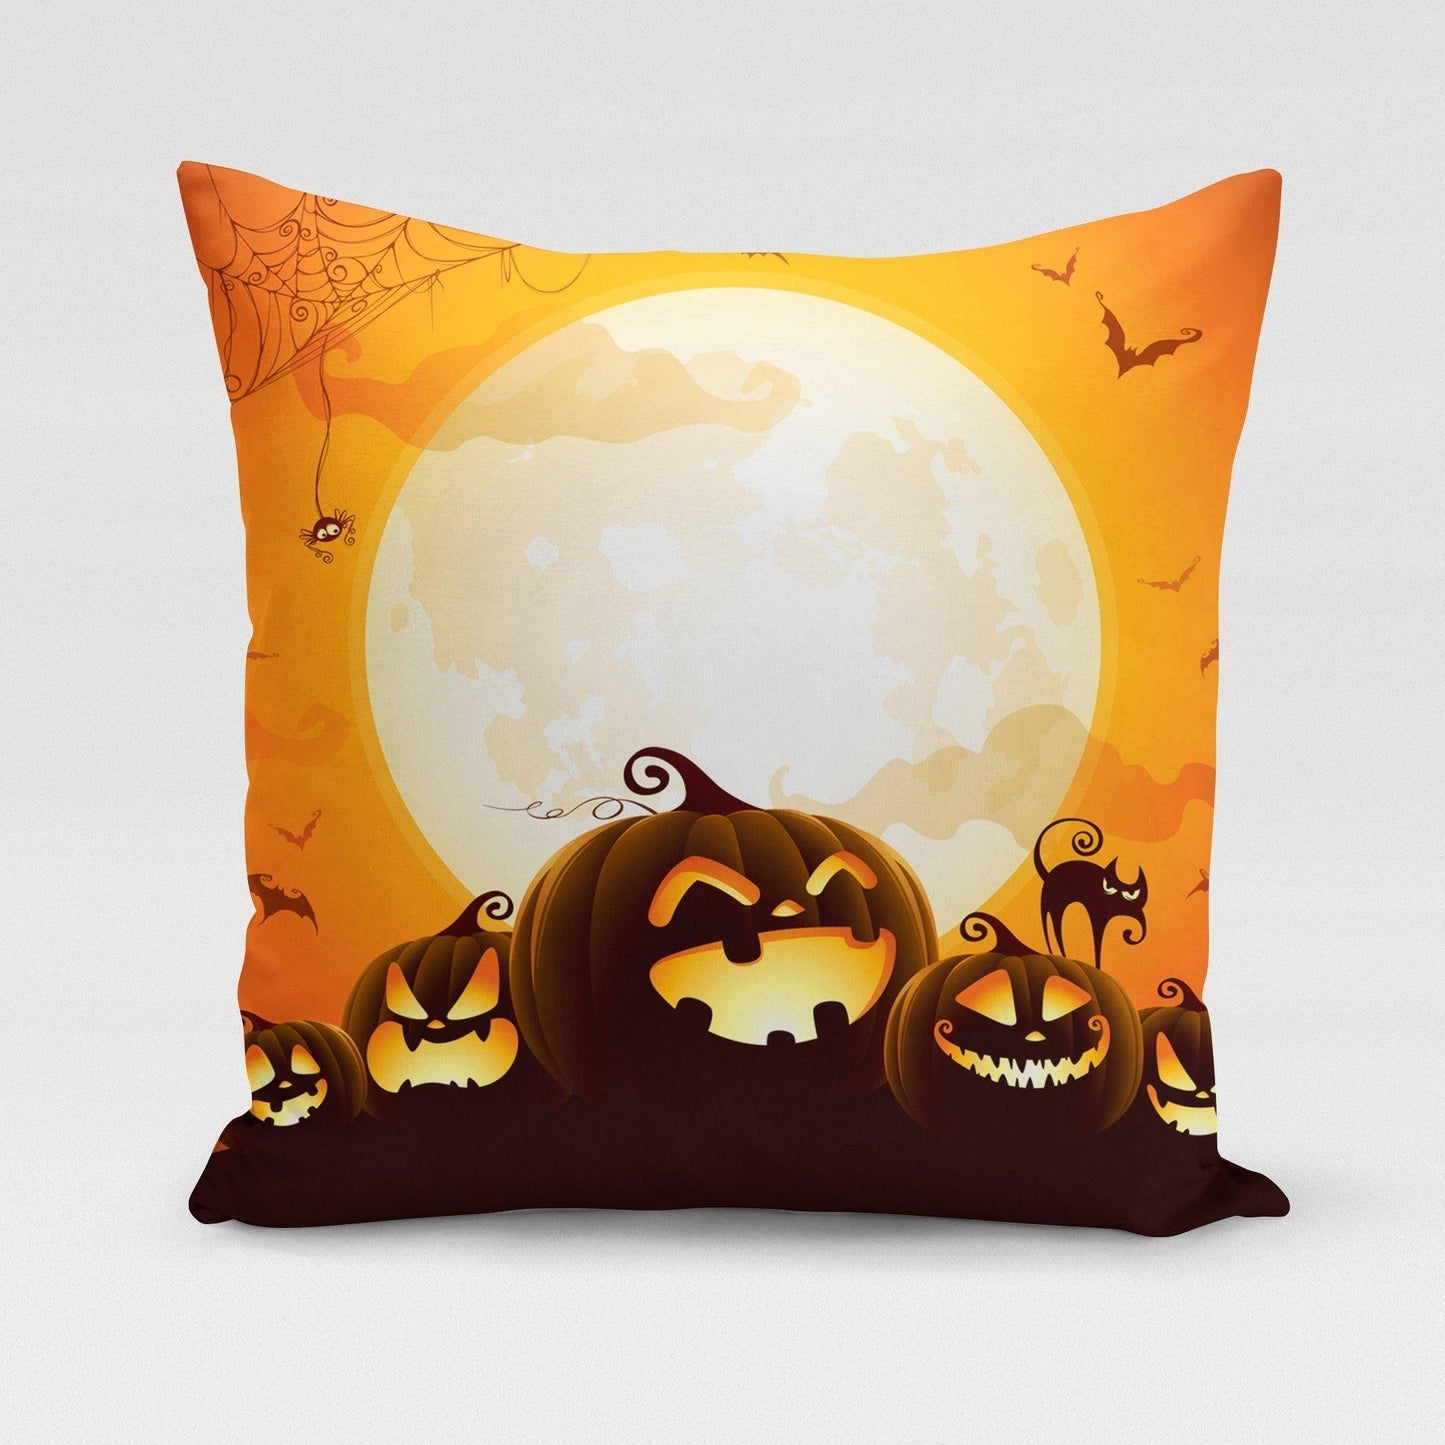 Pumpkin Moon Pillow Cover